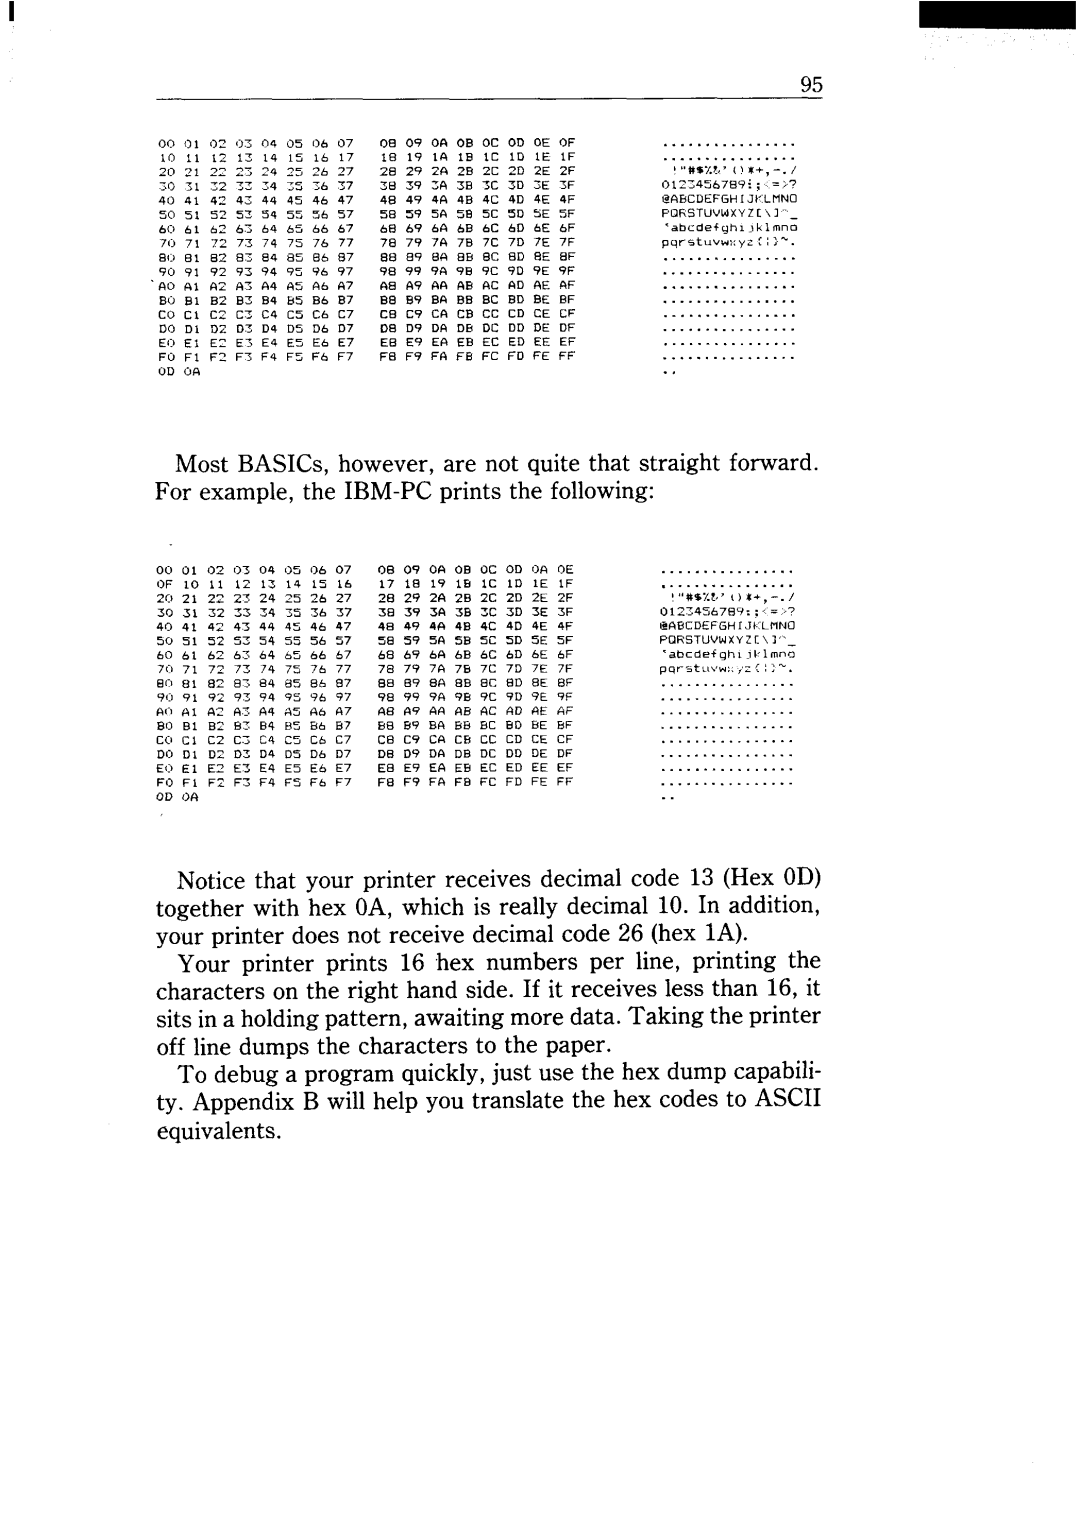 Star Micronics NX-15 user manual 7B 7C 7D 7E 7F, 102 DE, J,#%./.?., x+ 